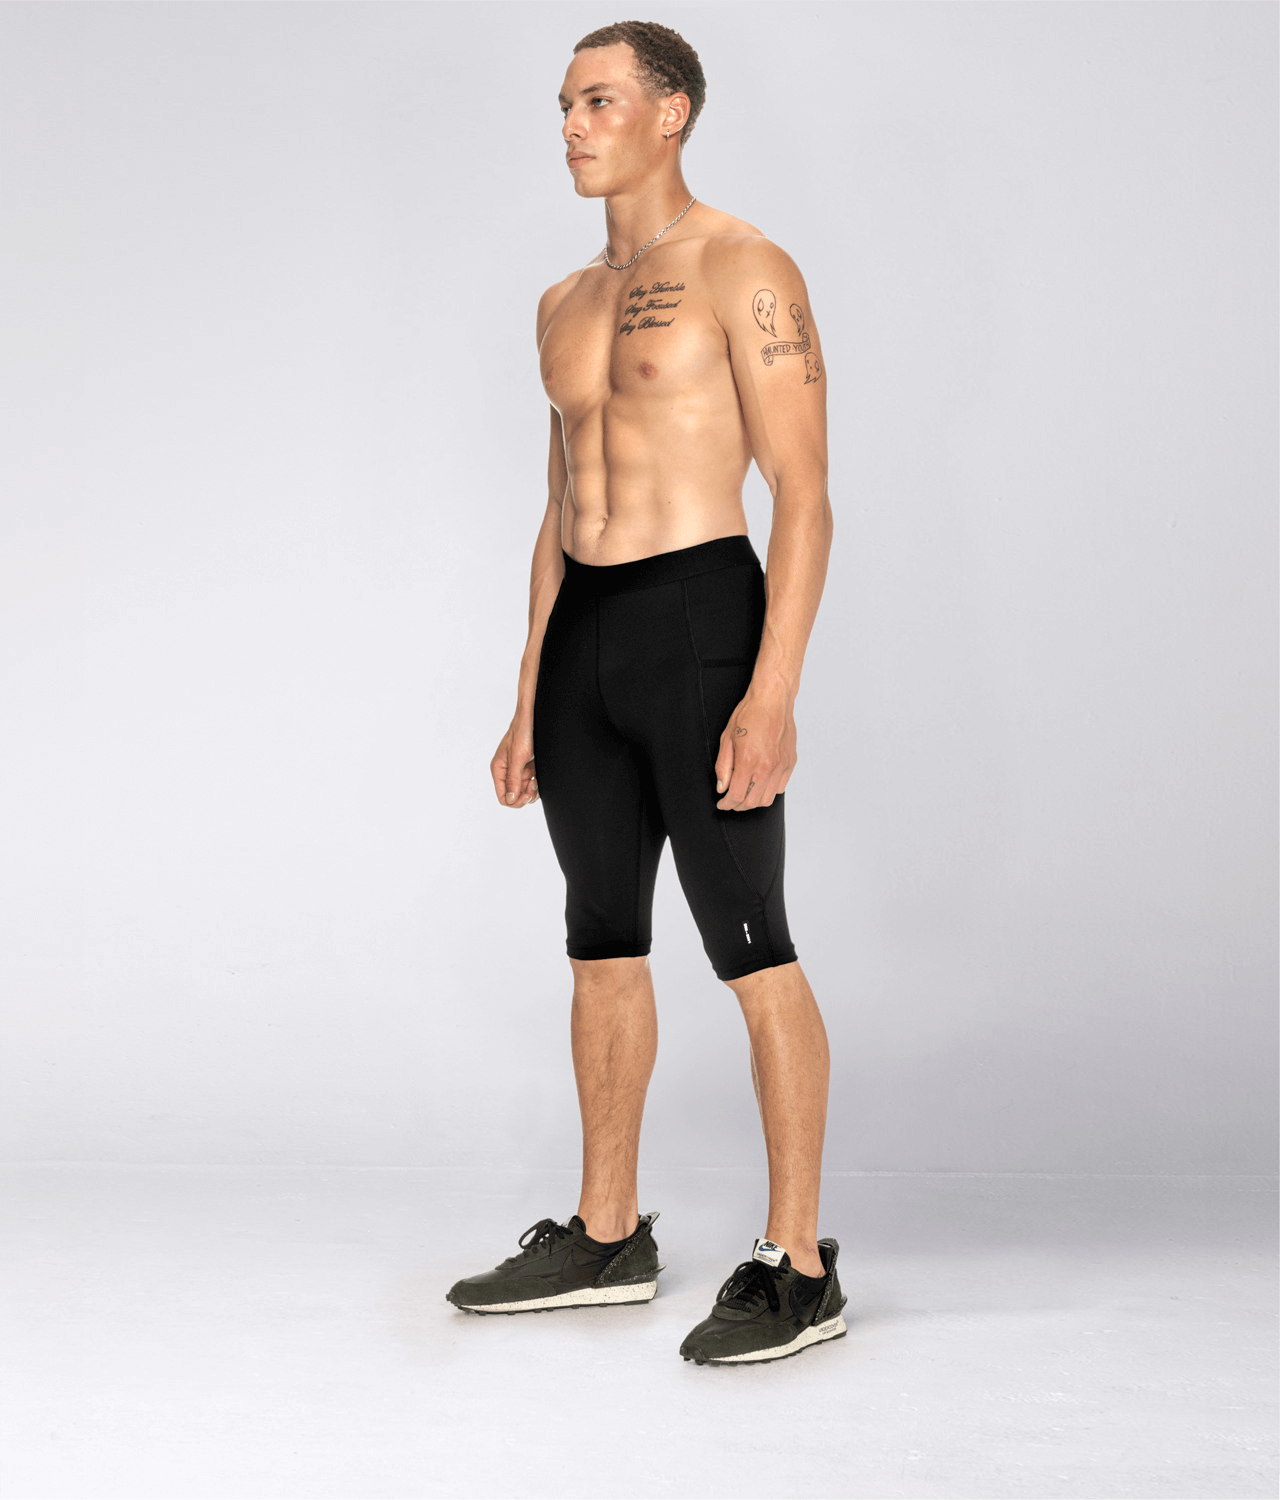 Men's Plain Black Compression Training Spat Pants